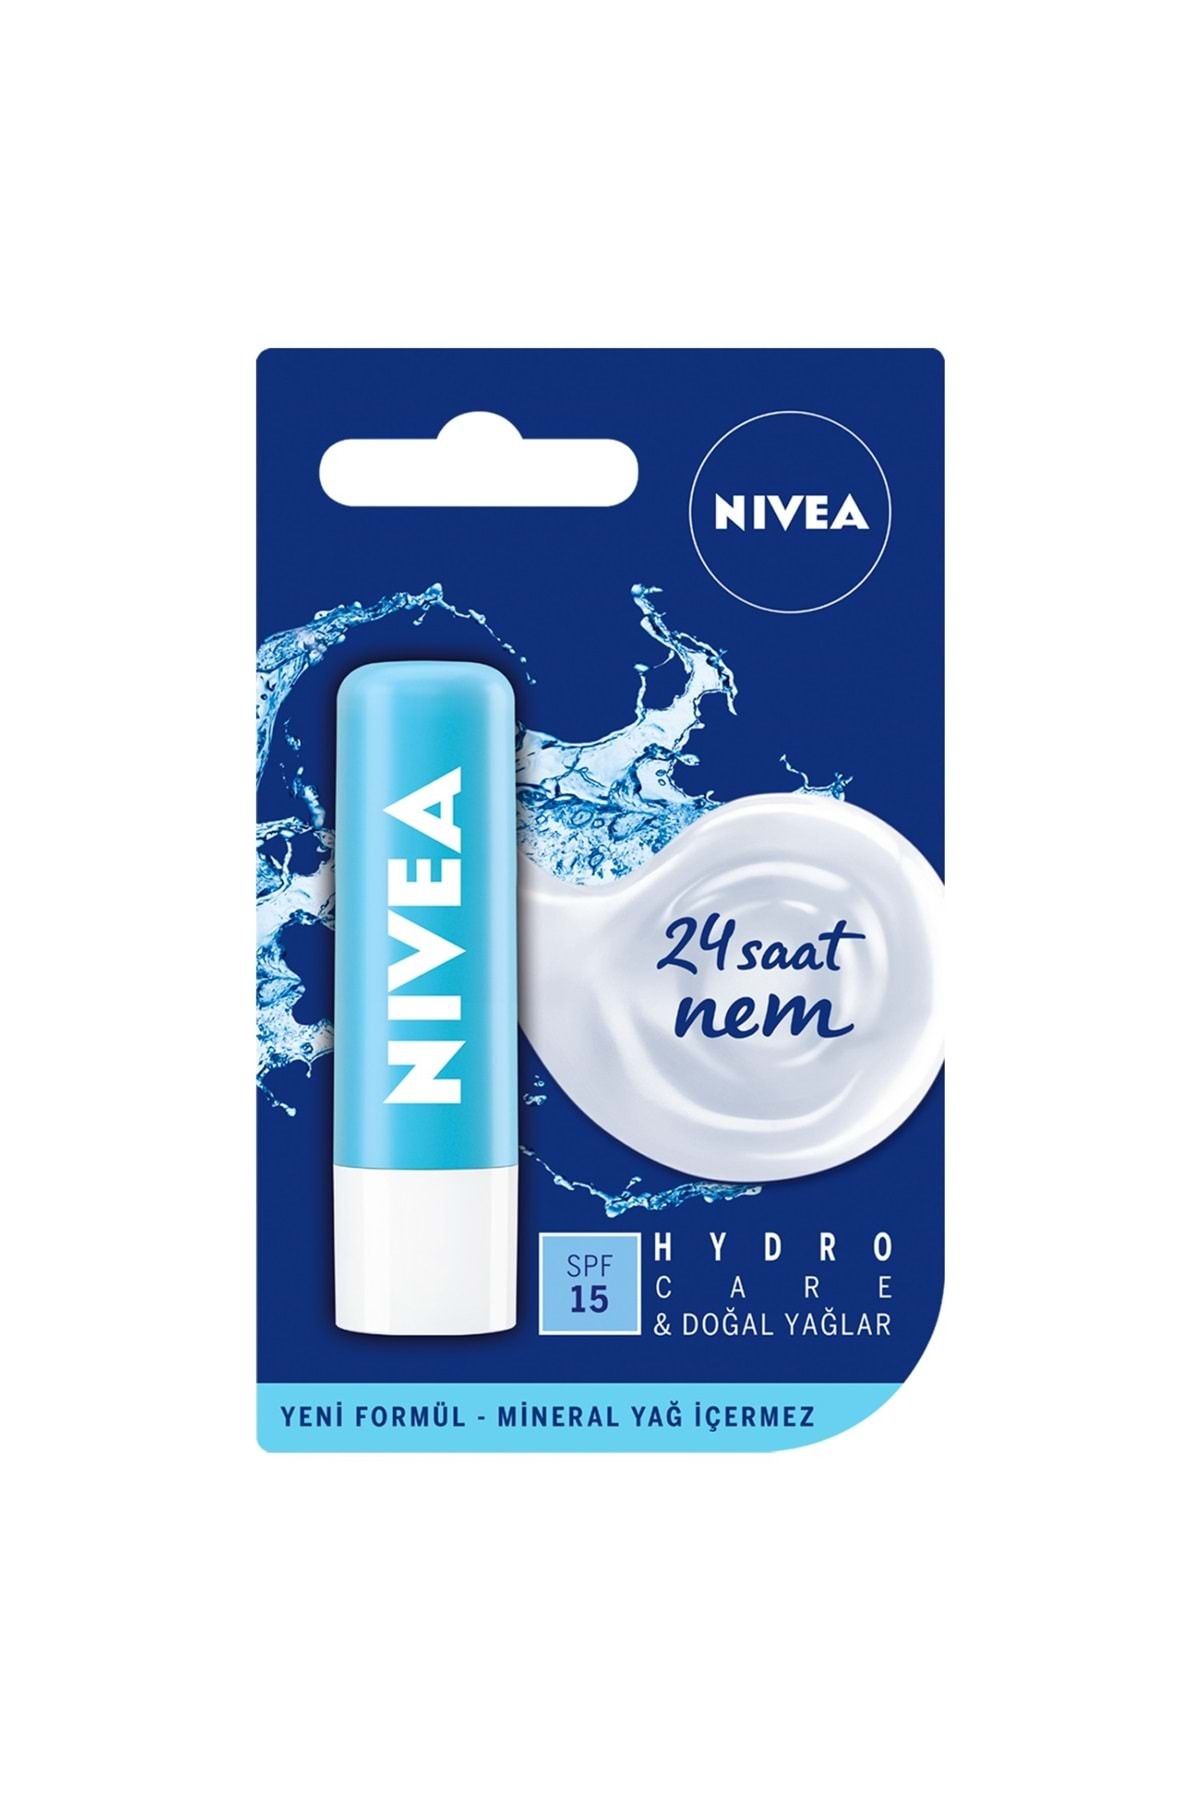 NIVEA Lip Stick Hydro Care 15 Spf